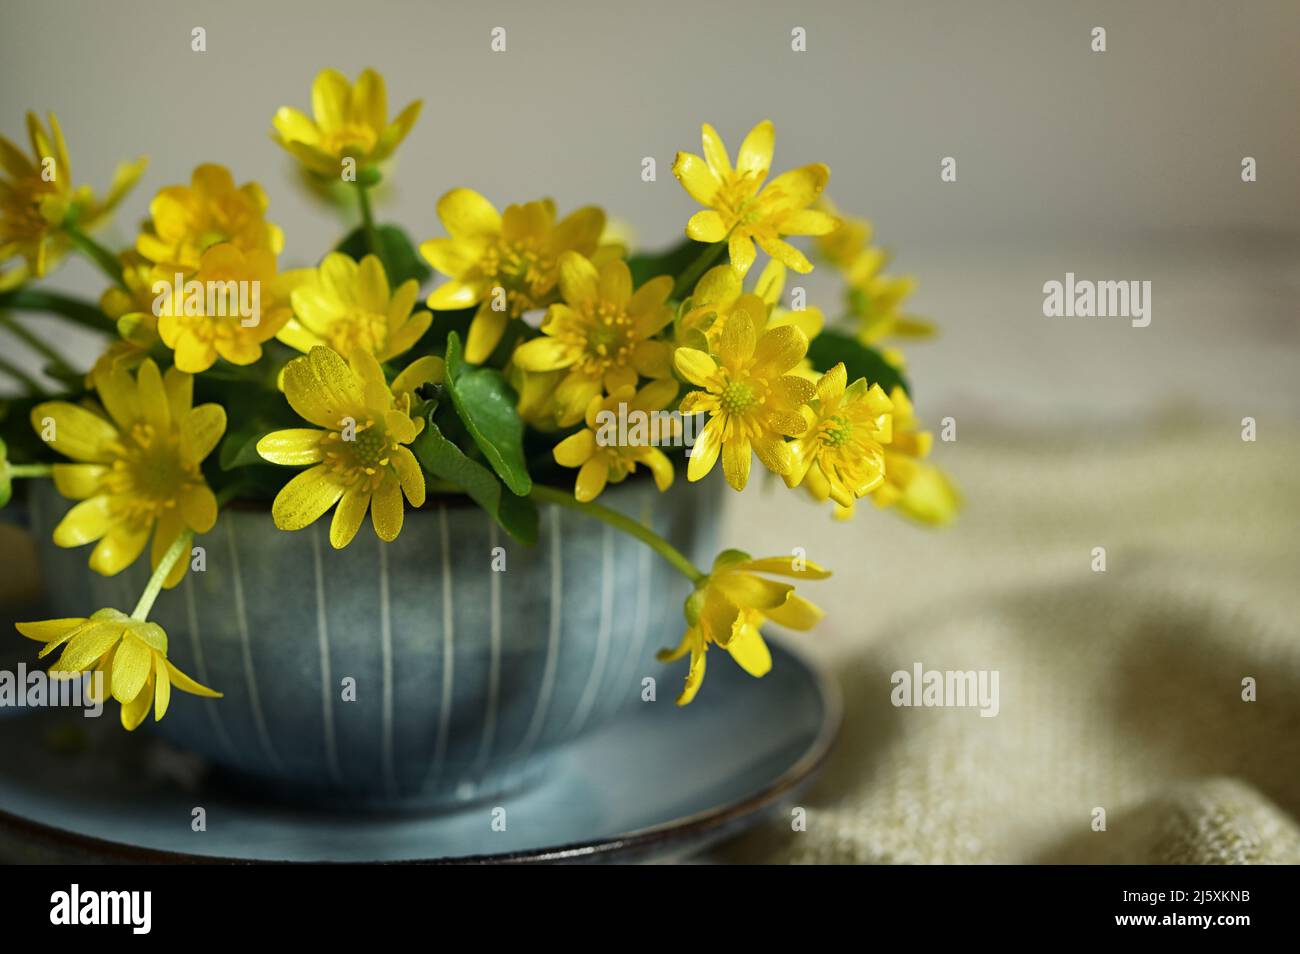 Nahaufnahme Einer gelben, kleinen Celandine-Blume im Teetasse Stockfoto